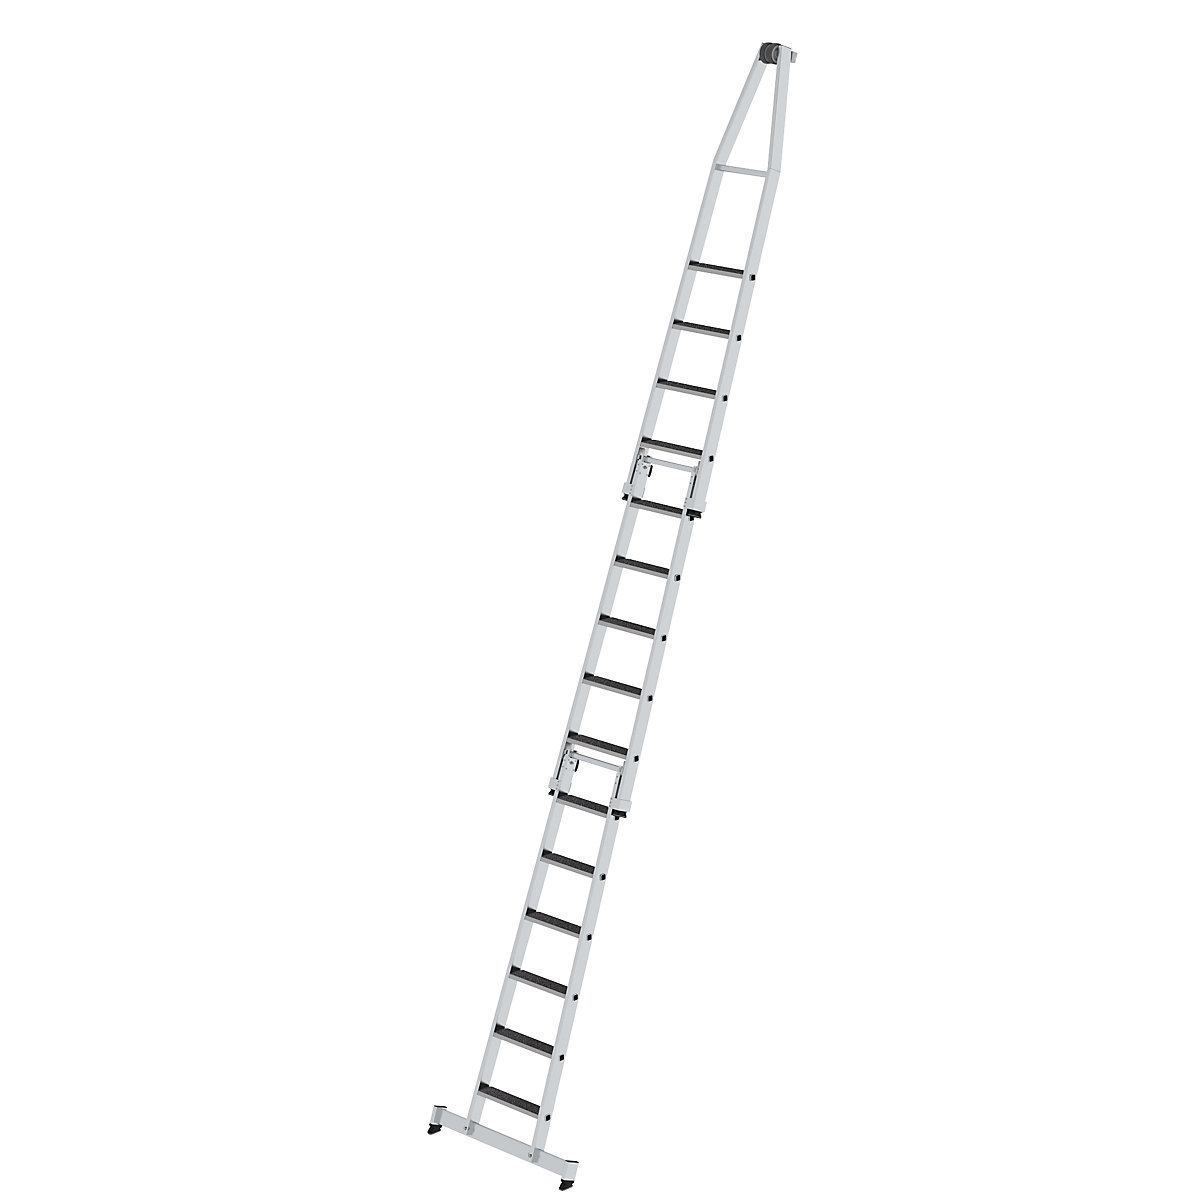 Escada para limpar vidros – MUNK, com apoio para os pés, 3 peças, 15 degraus-1